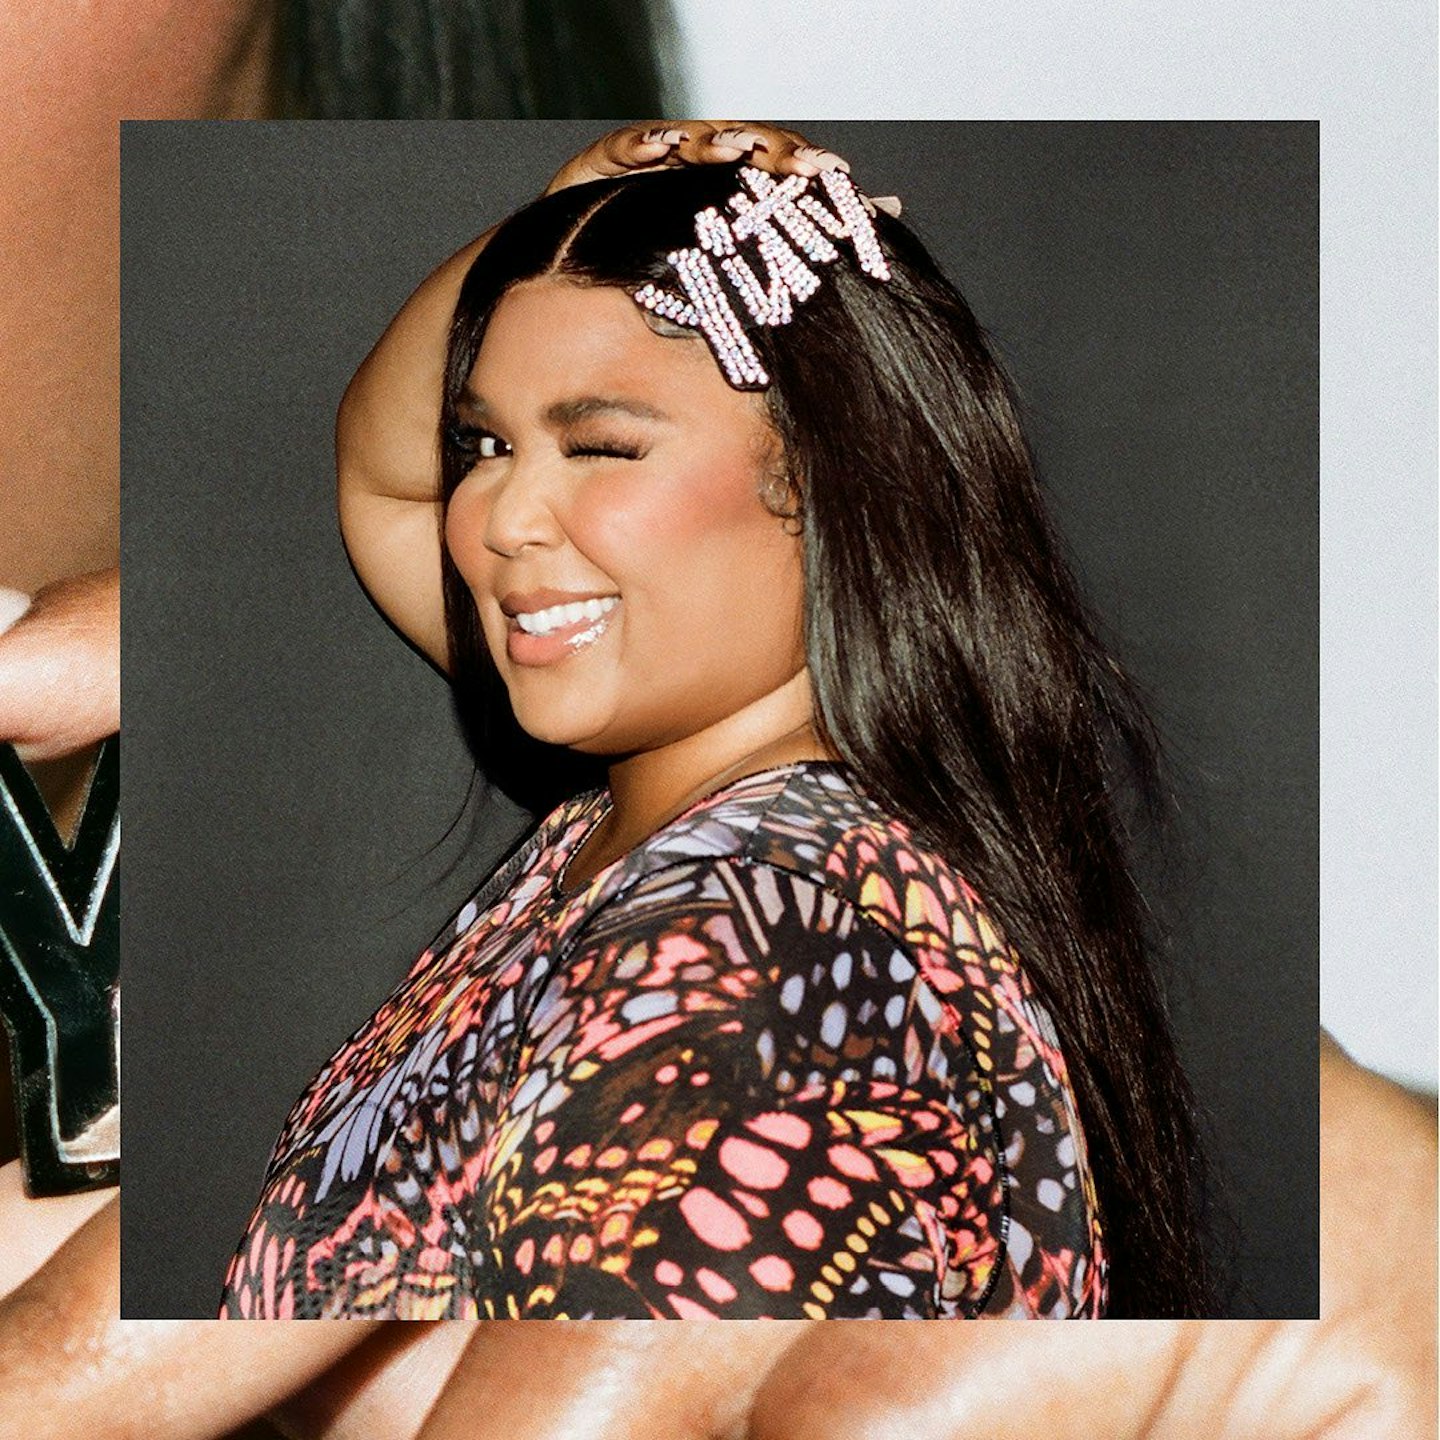 Yitty by Lizzo vs Skims by Kim Kardashian: Which Shapewear is